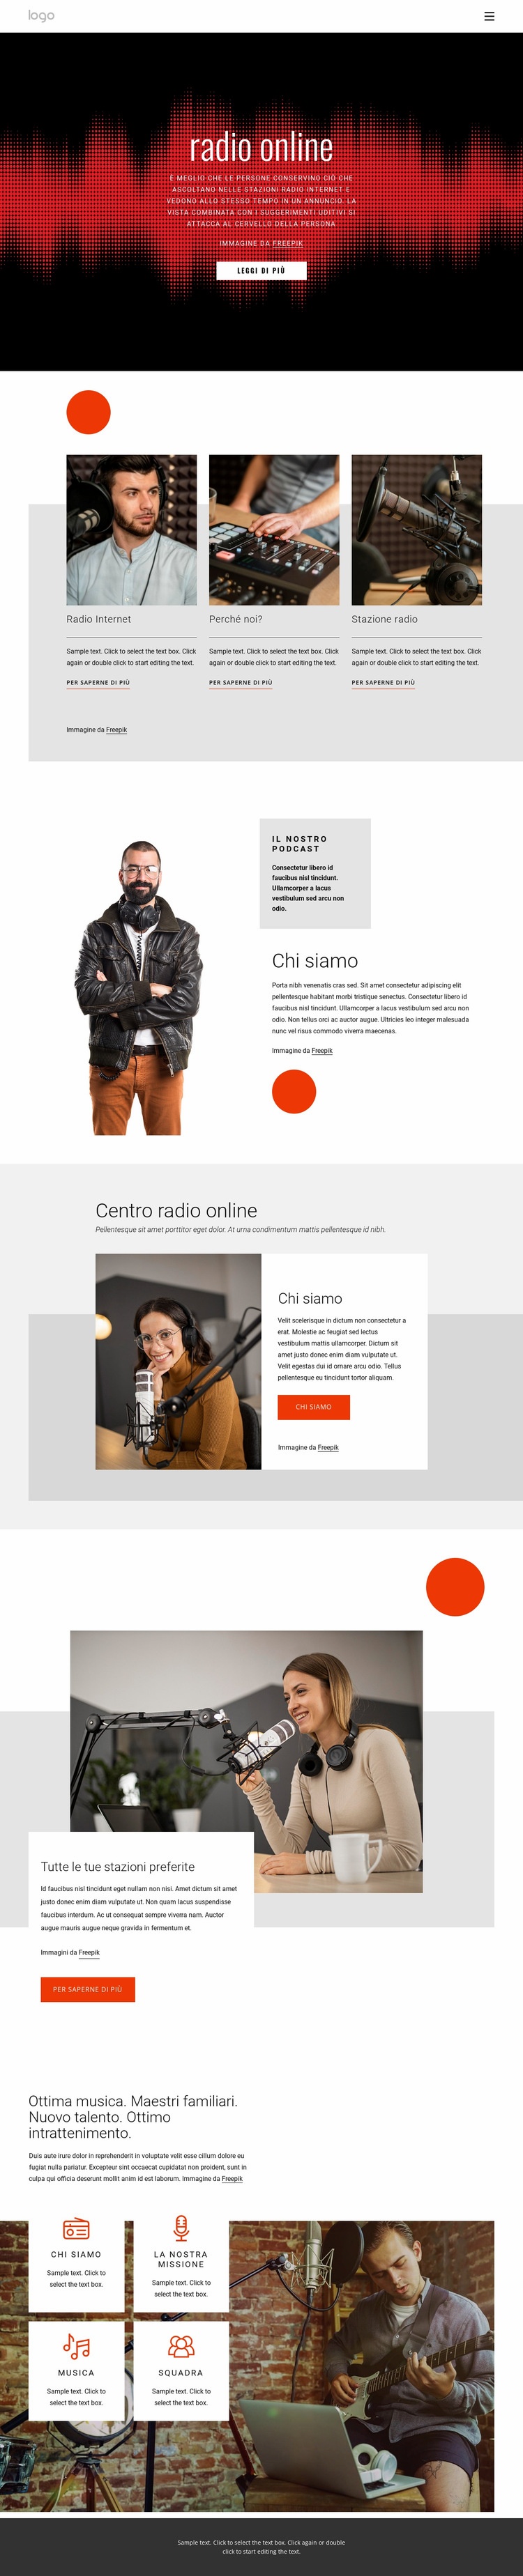 Programmi radiofonici in linea Mockup del sito web